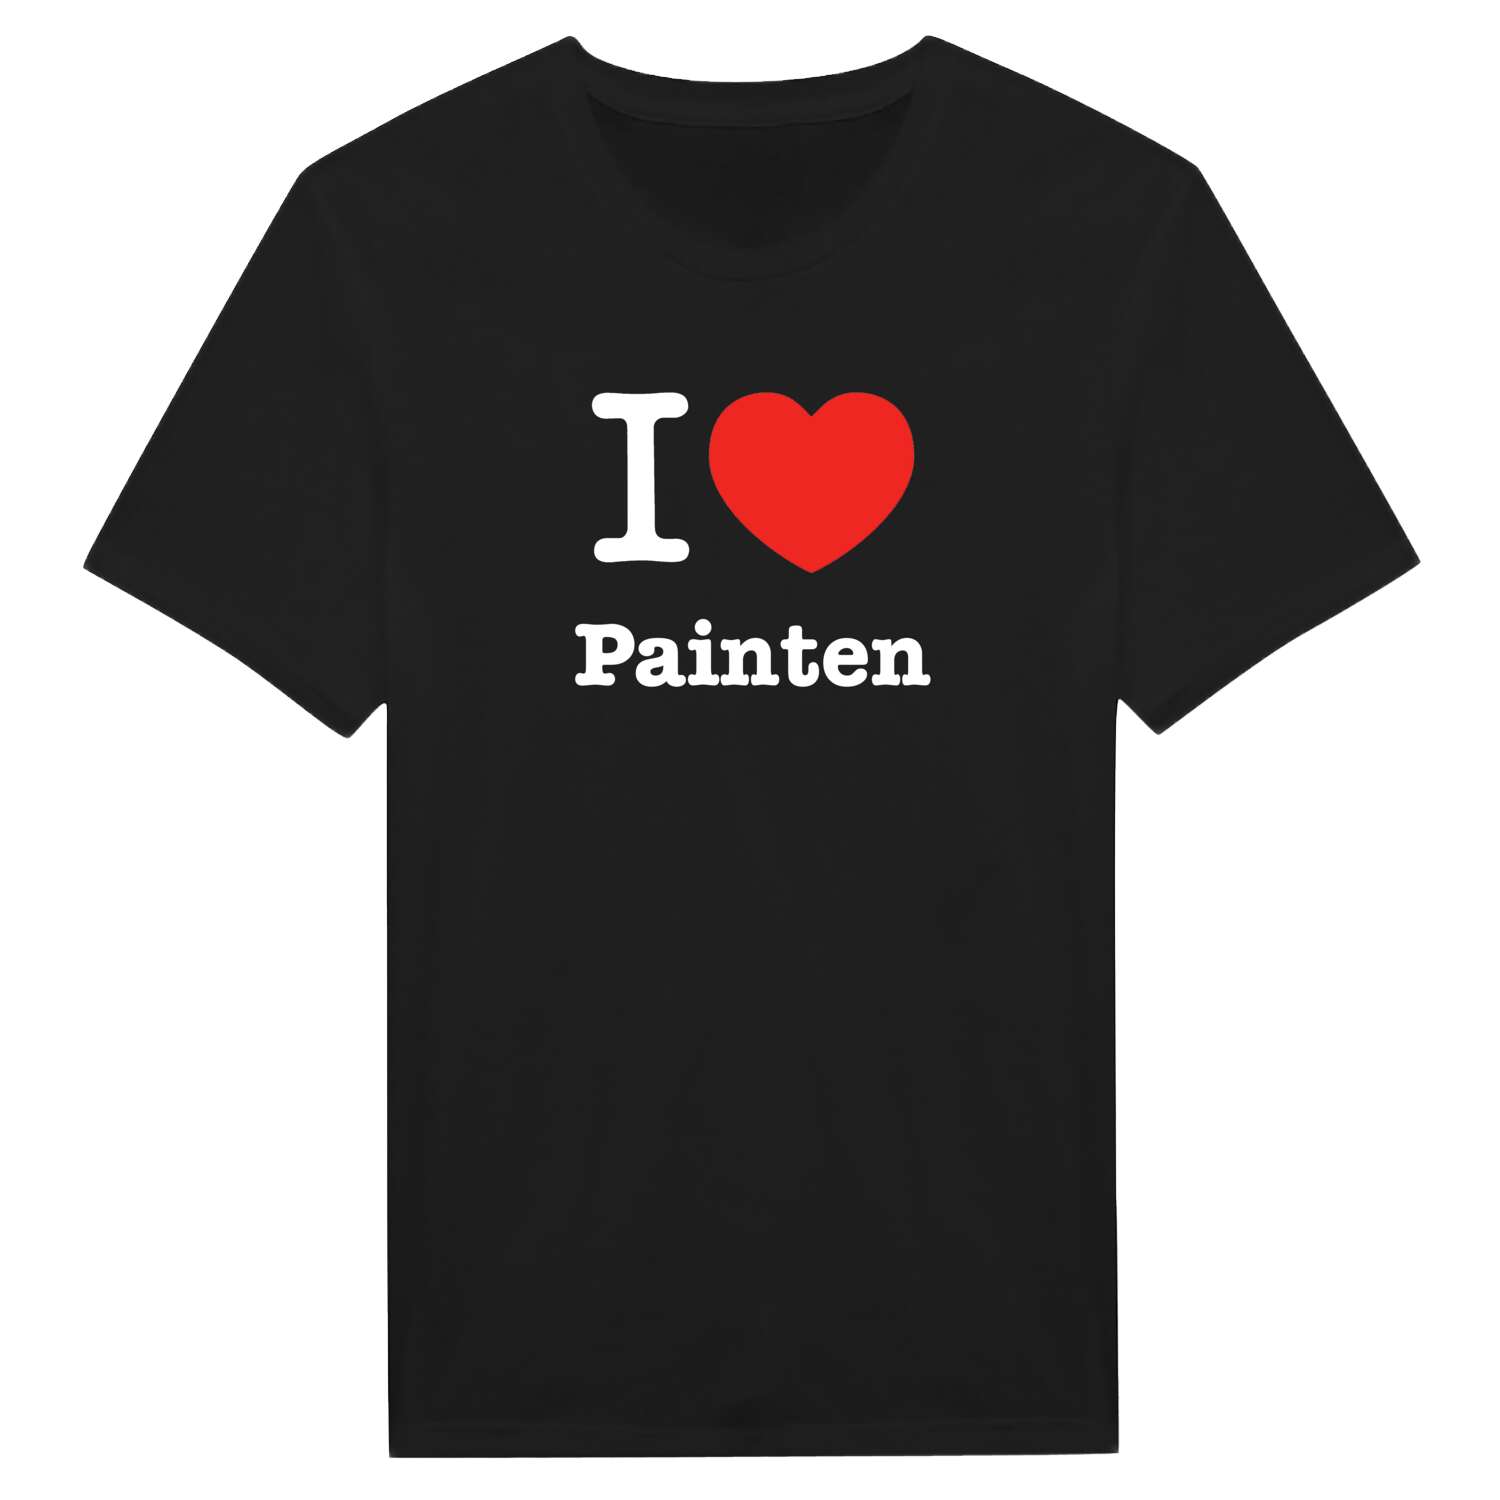 Painten T-Shirt »I love«